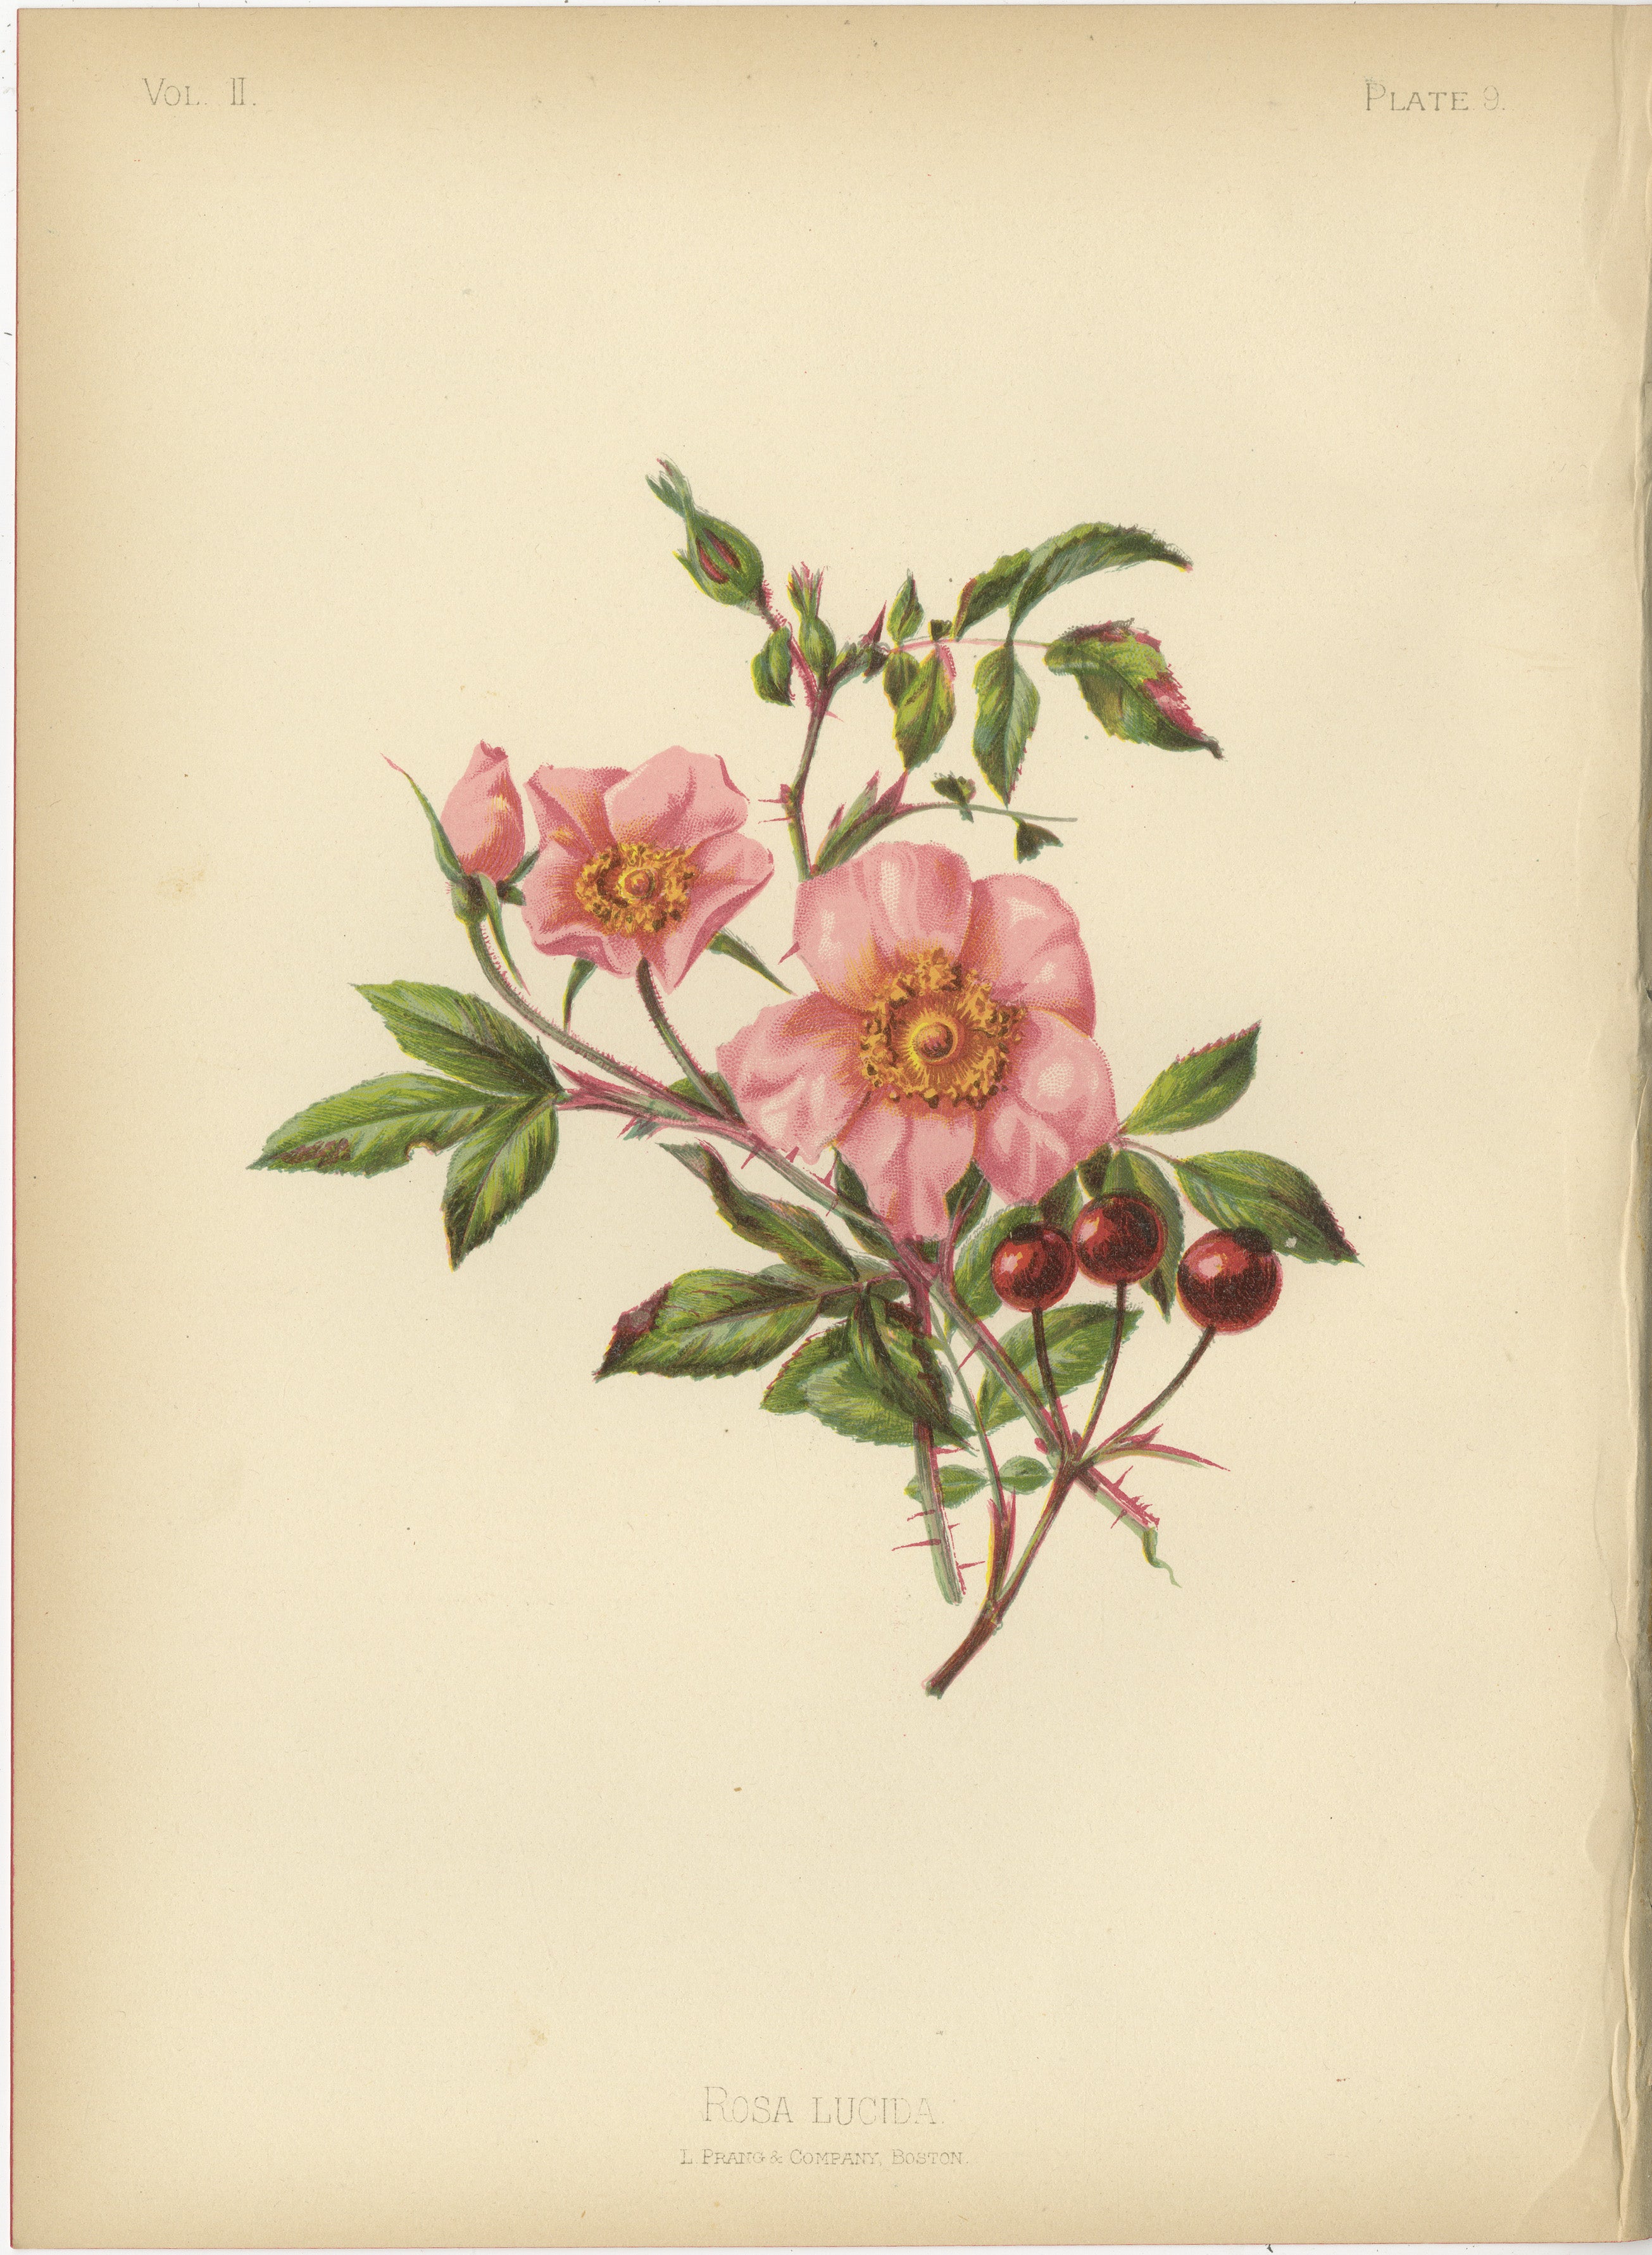 Die  Das angebotene Bild ist eine kolorierte Chromolithografie der Rosa lucida, die gemeinhin als leuchtende Rose bekannt ist. Diese Illustration wäre in Thomas Meehans 1879 erschienenem Werk The Native Flowers and Ferns of the United States